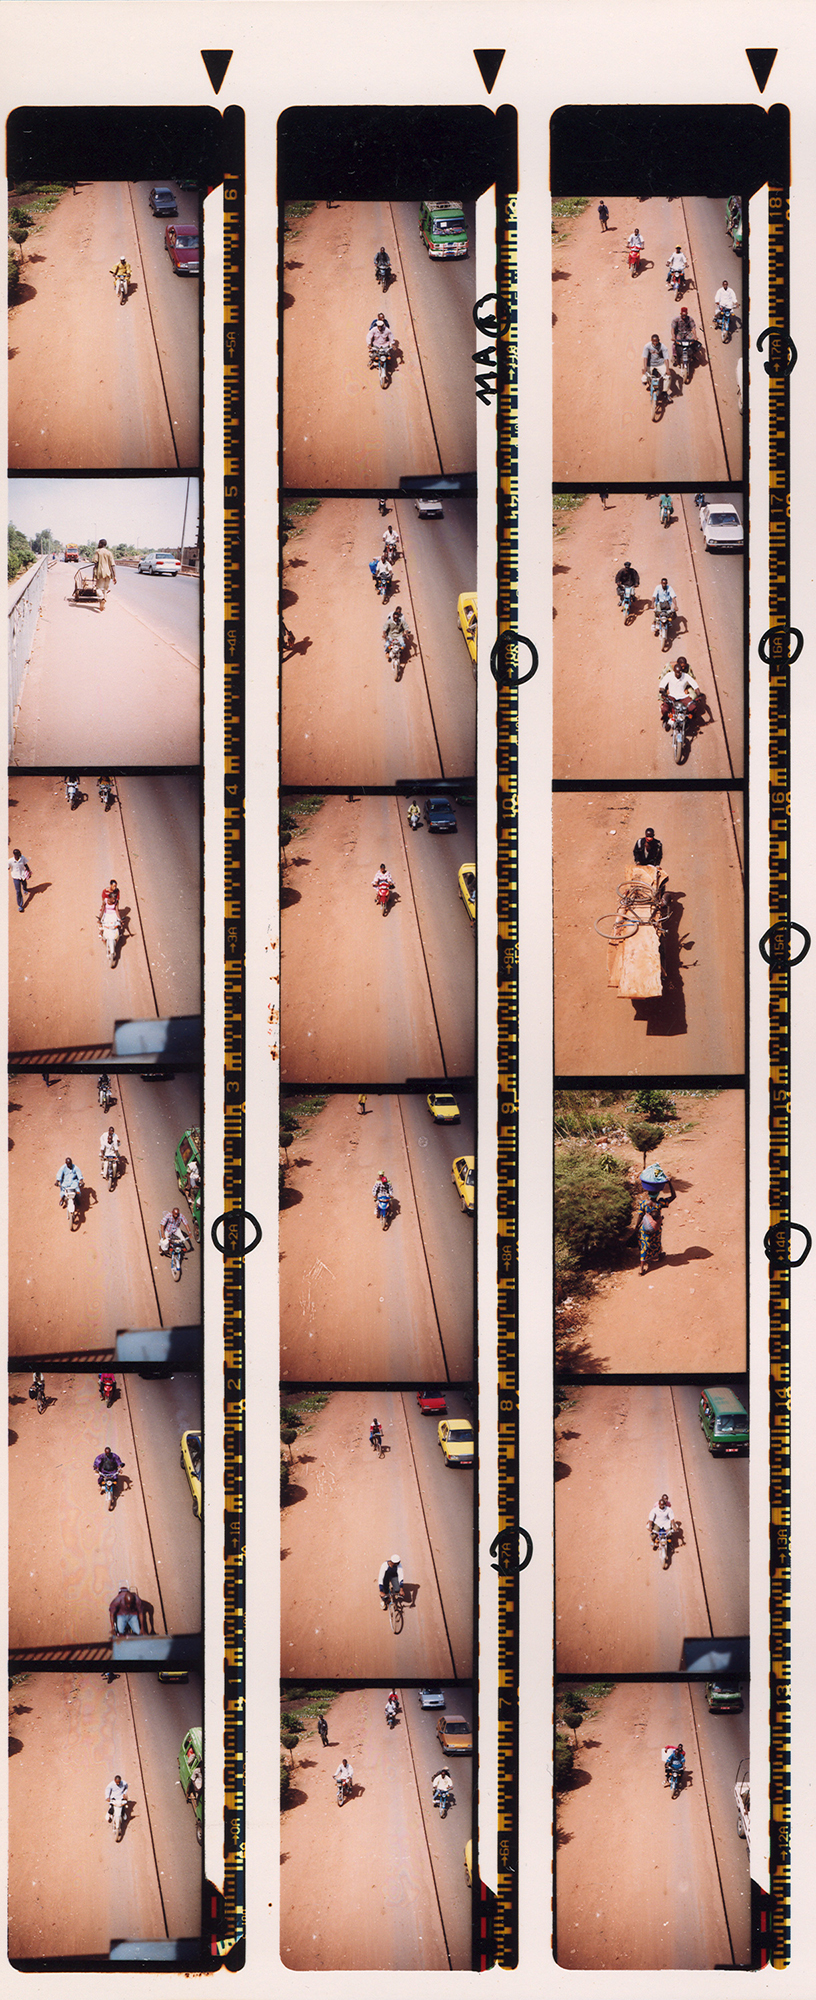 Magnolia Soto. Serie Bamako sur le pont, 2005. Hoja de contacto 8. Fotografía. 